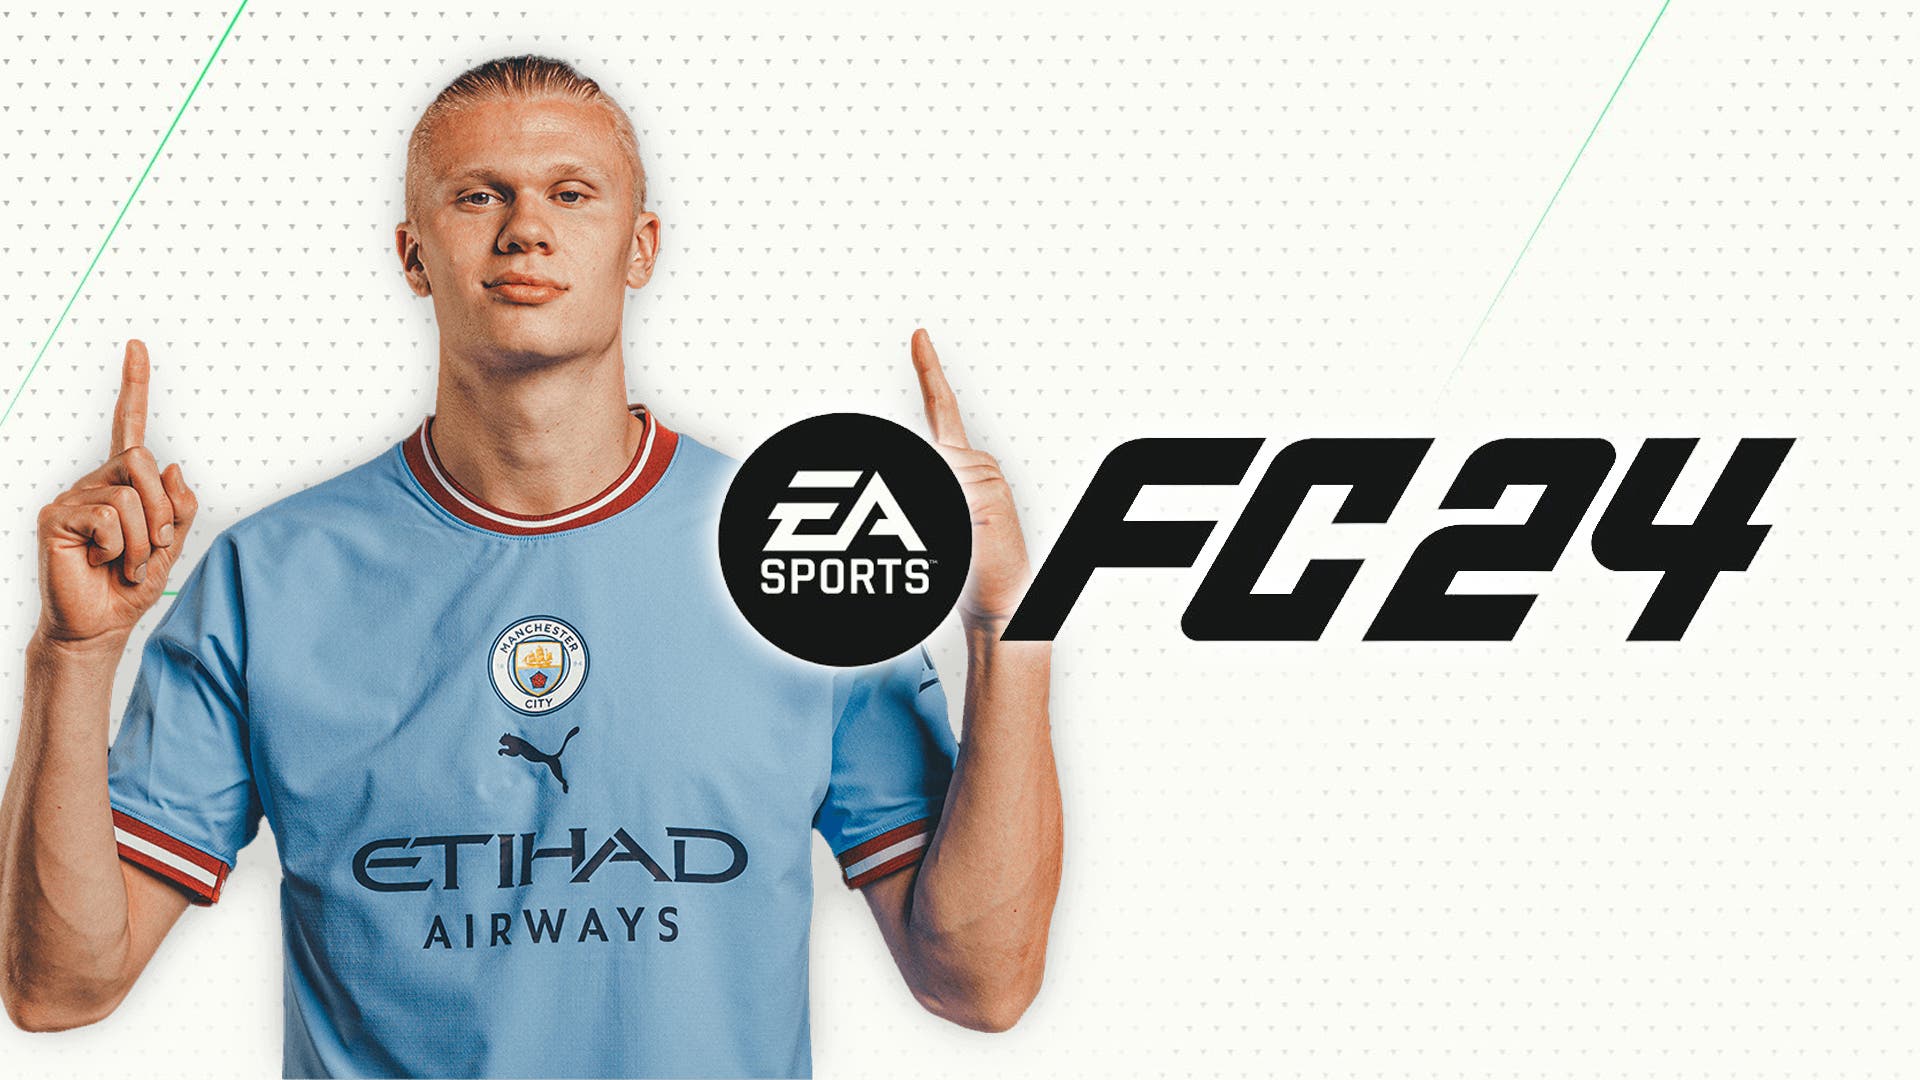 EA Sports FC 24 ve filtrado TODO, desde el jugador estrella de portada  hasta ediciones y precios del juego